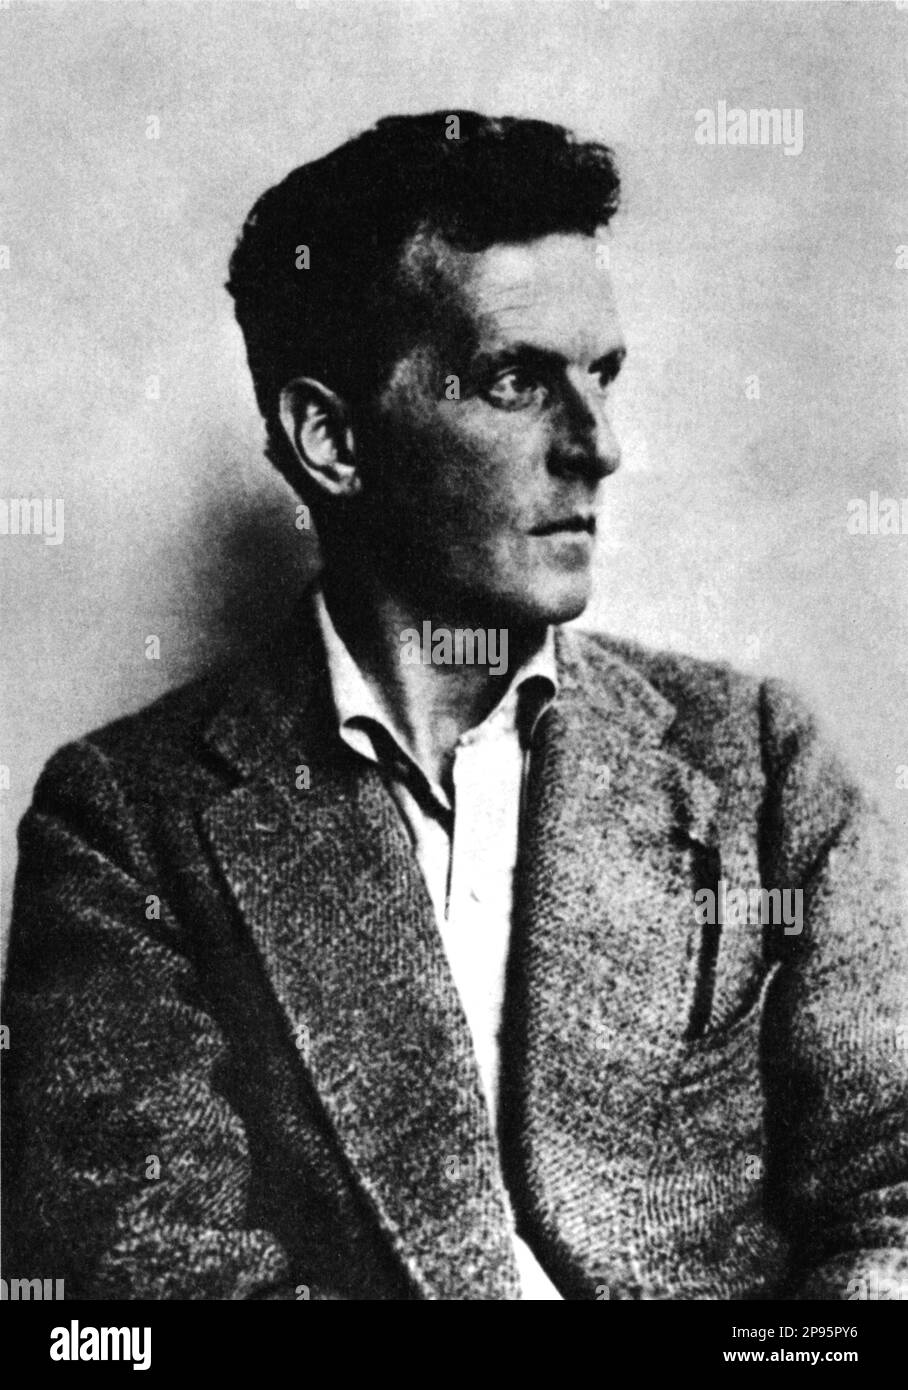 1915 c,  AUSTRIA : The austrian philosopher LUDWIG WITTGENSTEIN ( Wien 1889 - Cambridge 1951 ). - FILOSOFO DEL LINGUAGGIO - LOGICO - LOGICA - FILOSOFIA - PHILOSOPHY Language - portrait - ritratto - ebreo - jewish  - GAY - portrait - ritratto - omosessuale - homosexual - homosexuality -  omosessualità - LGBT -  - sessuologo - sessuologia - sexuology  - portrait - ritratto - profilo - profile ----  Archivio GBB Stock Photo